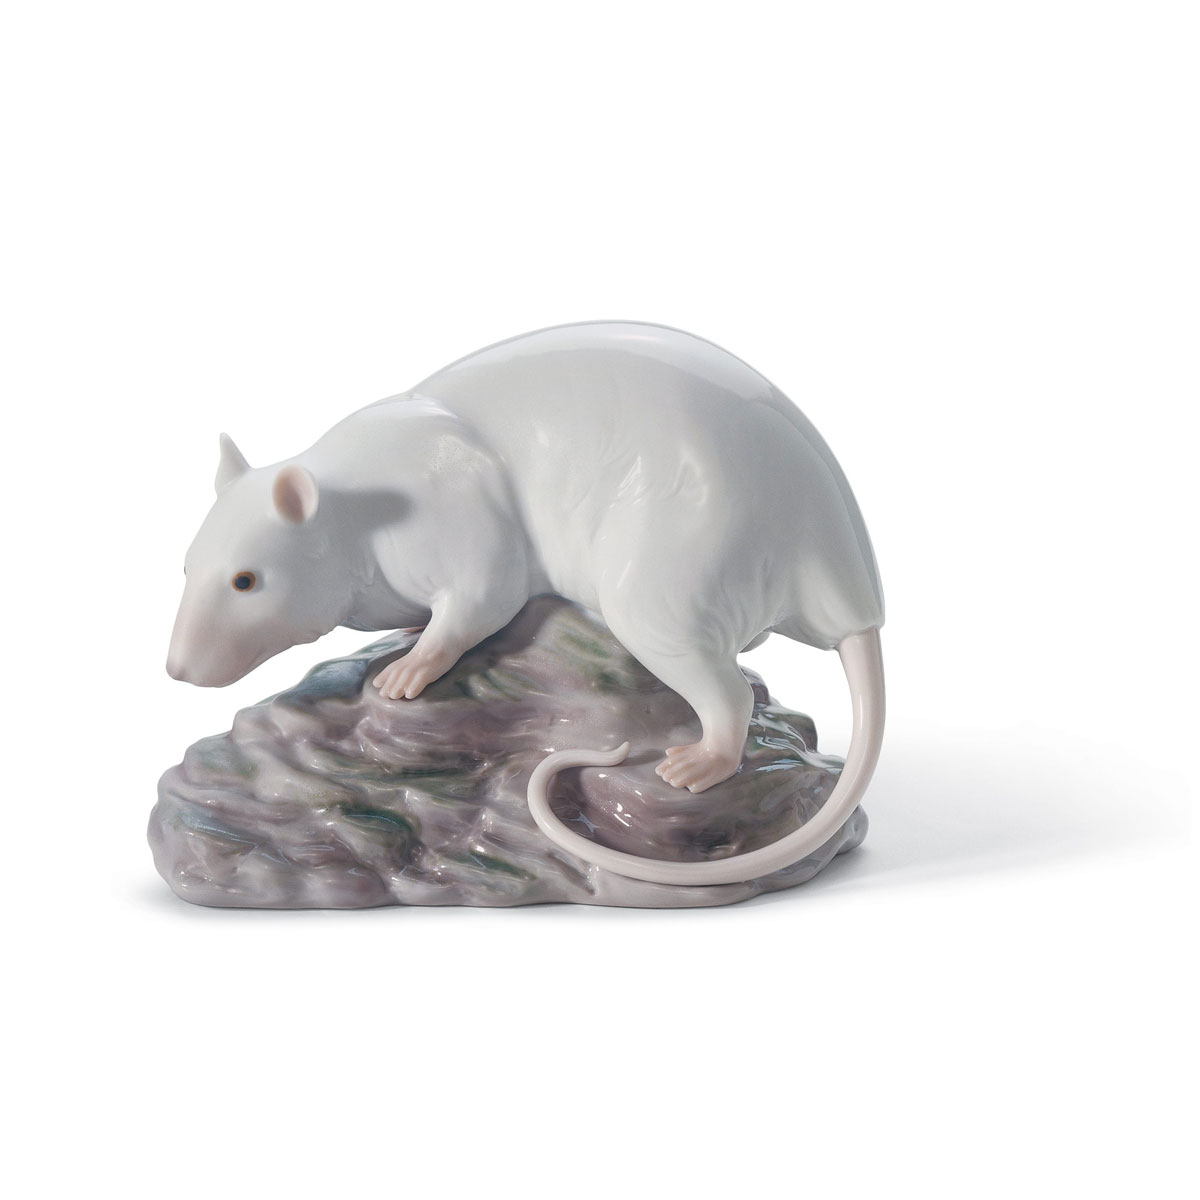 Lladro Classic Sculpture, The Rat Figurine